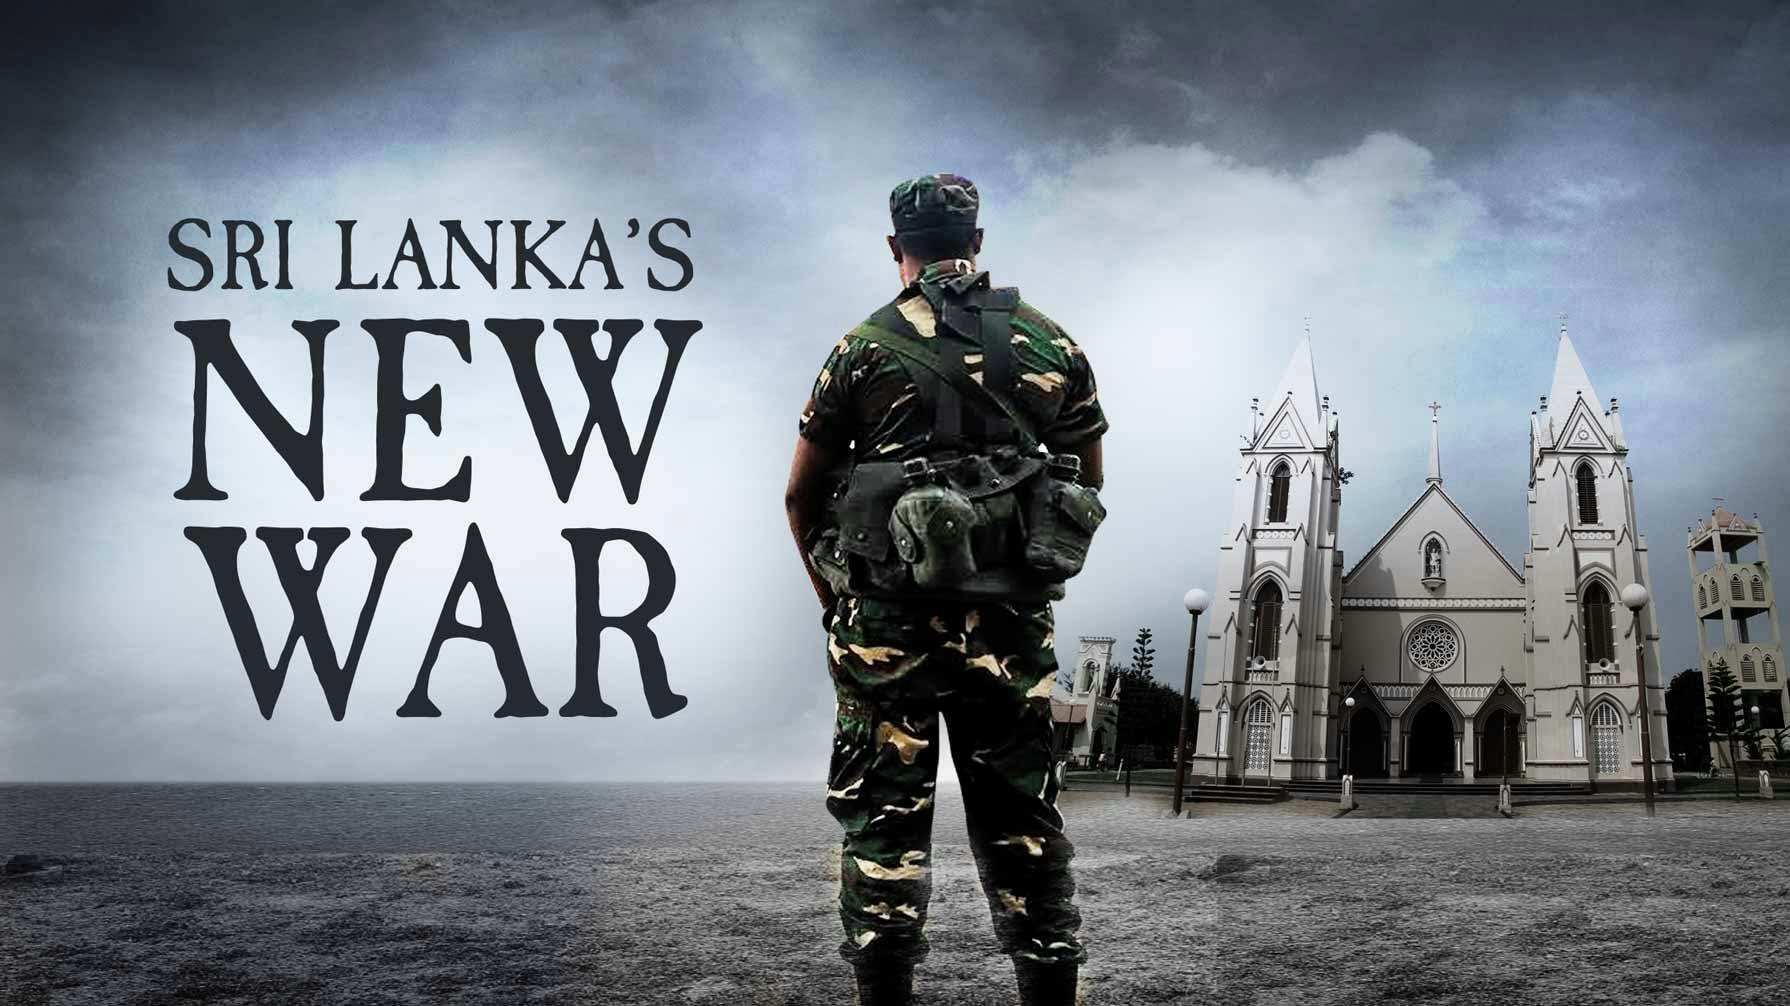 Sri Lanka's New War